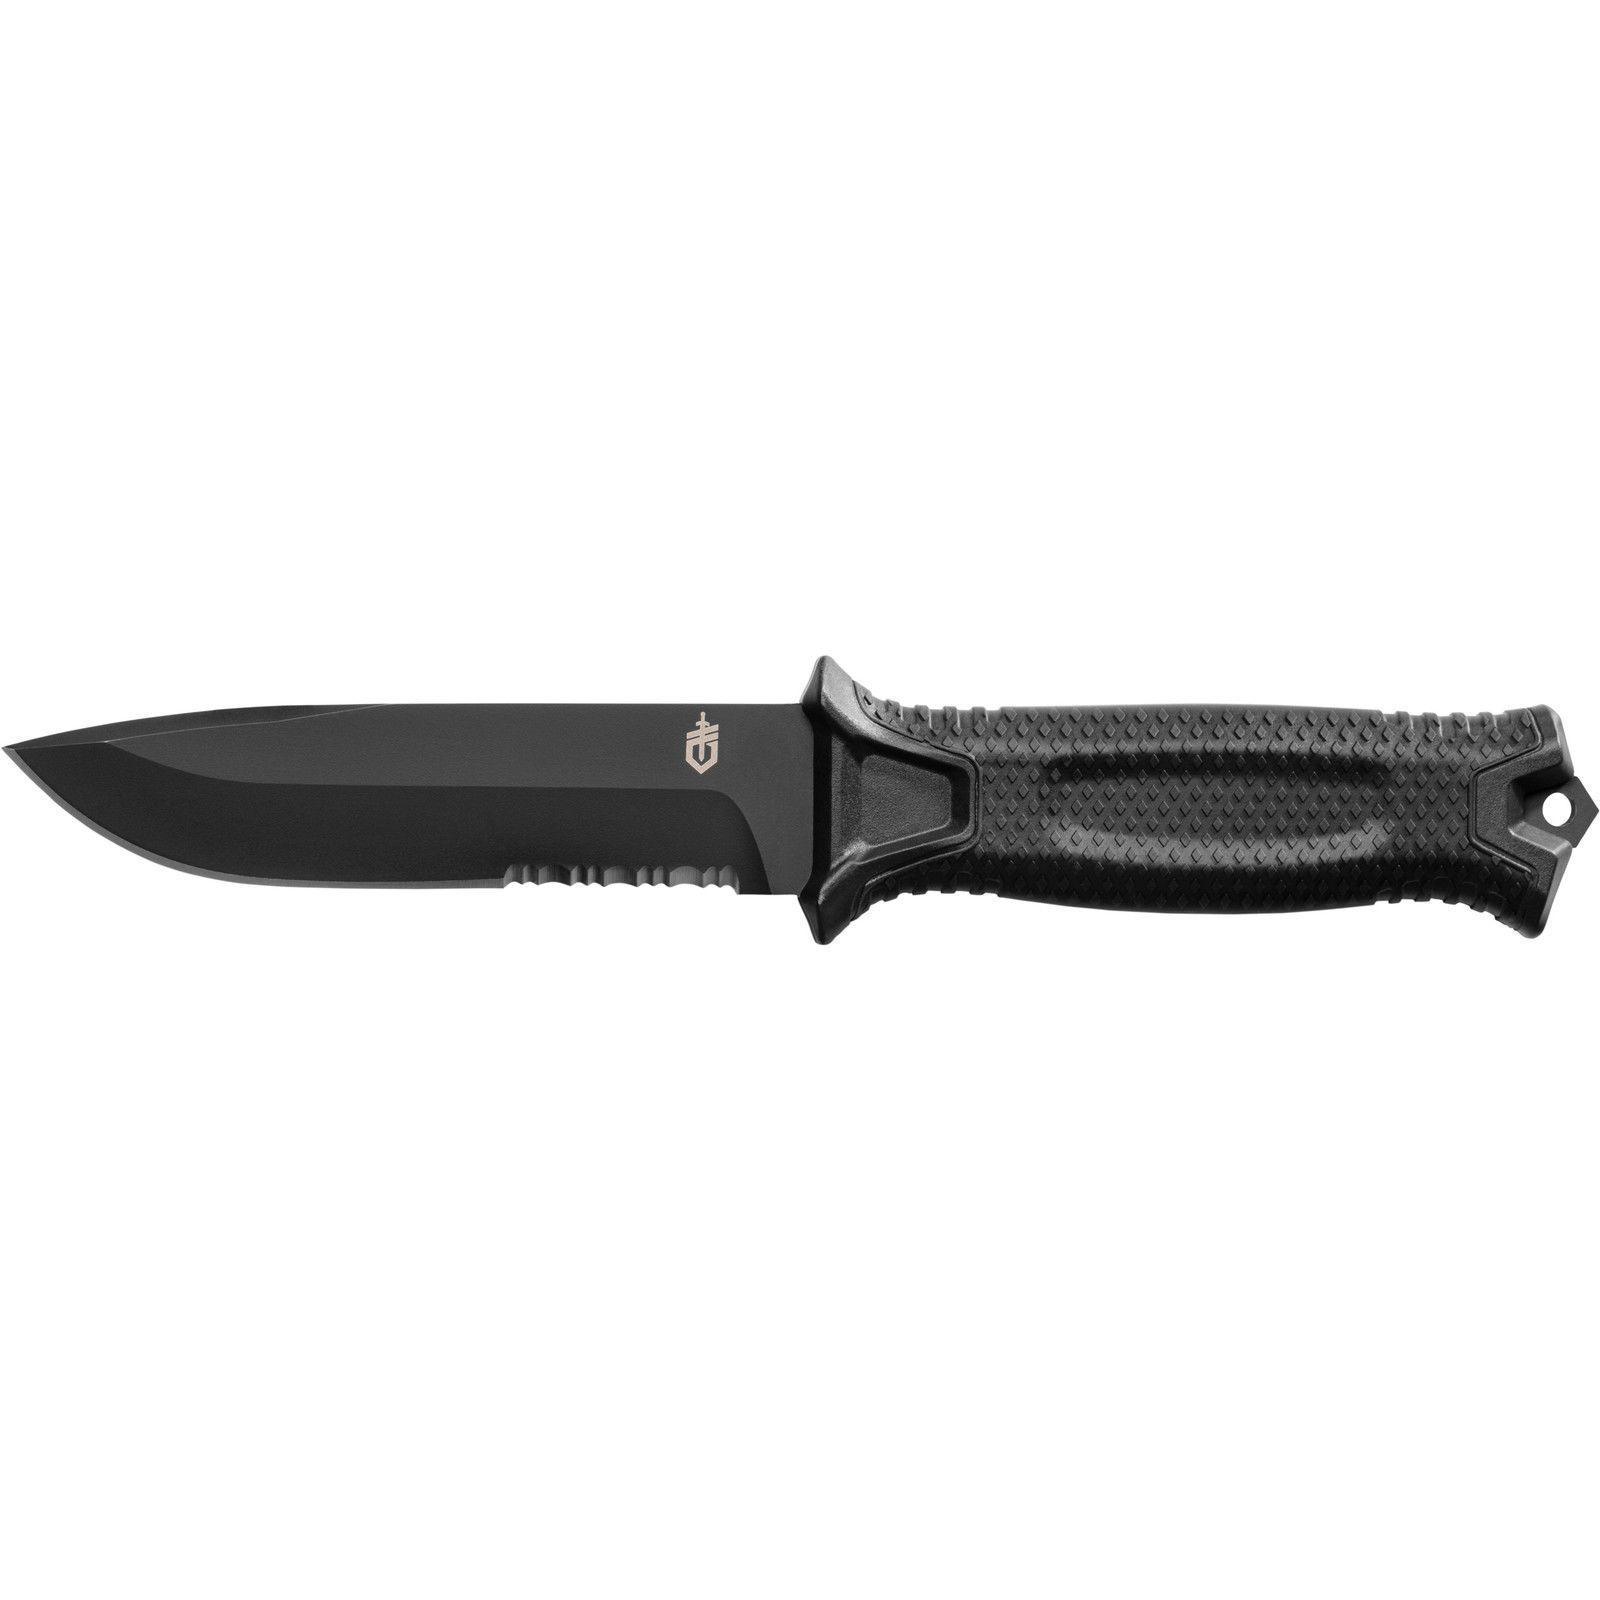 Gerber Strongarm Fixed Blade Knife-Serrated Edge. (Knivar, Sågar & Yxor) från Gerber. | TacNGear - Utrustning för polis och militär och outdoor.